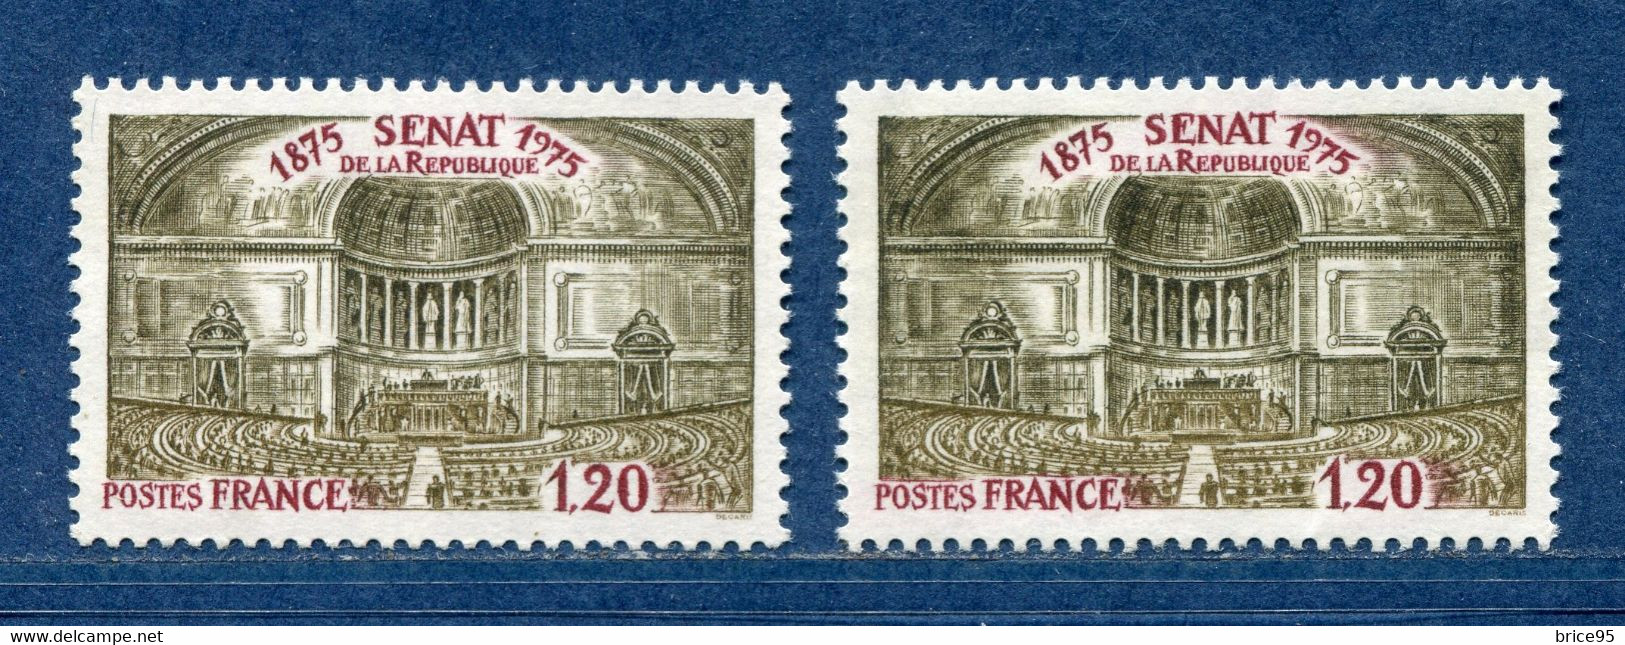 ⭐ France - Variété - YT N° 1843 - Couleurs - Pétouille - Neuf Sans Charnière - 1975 ⭐ - Ungebraucht